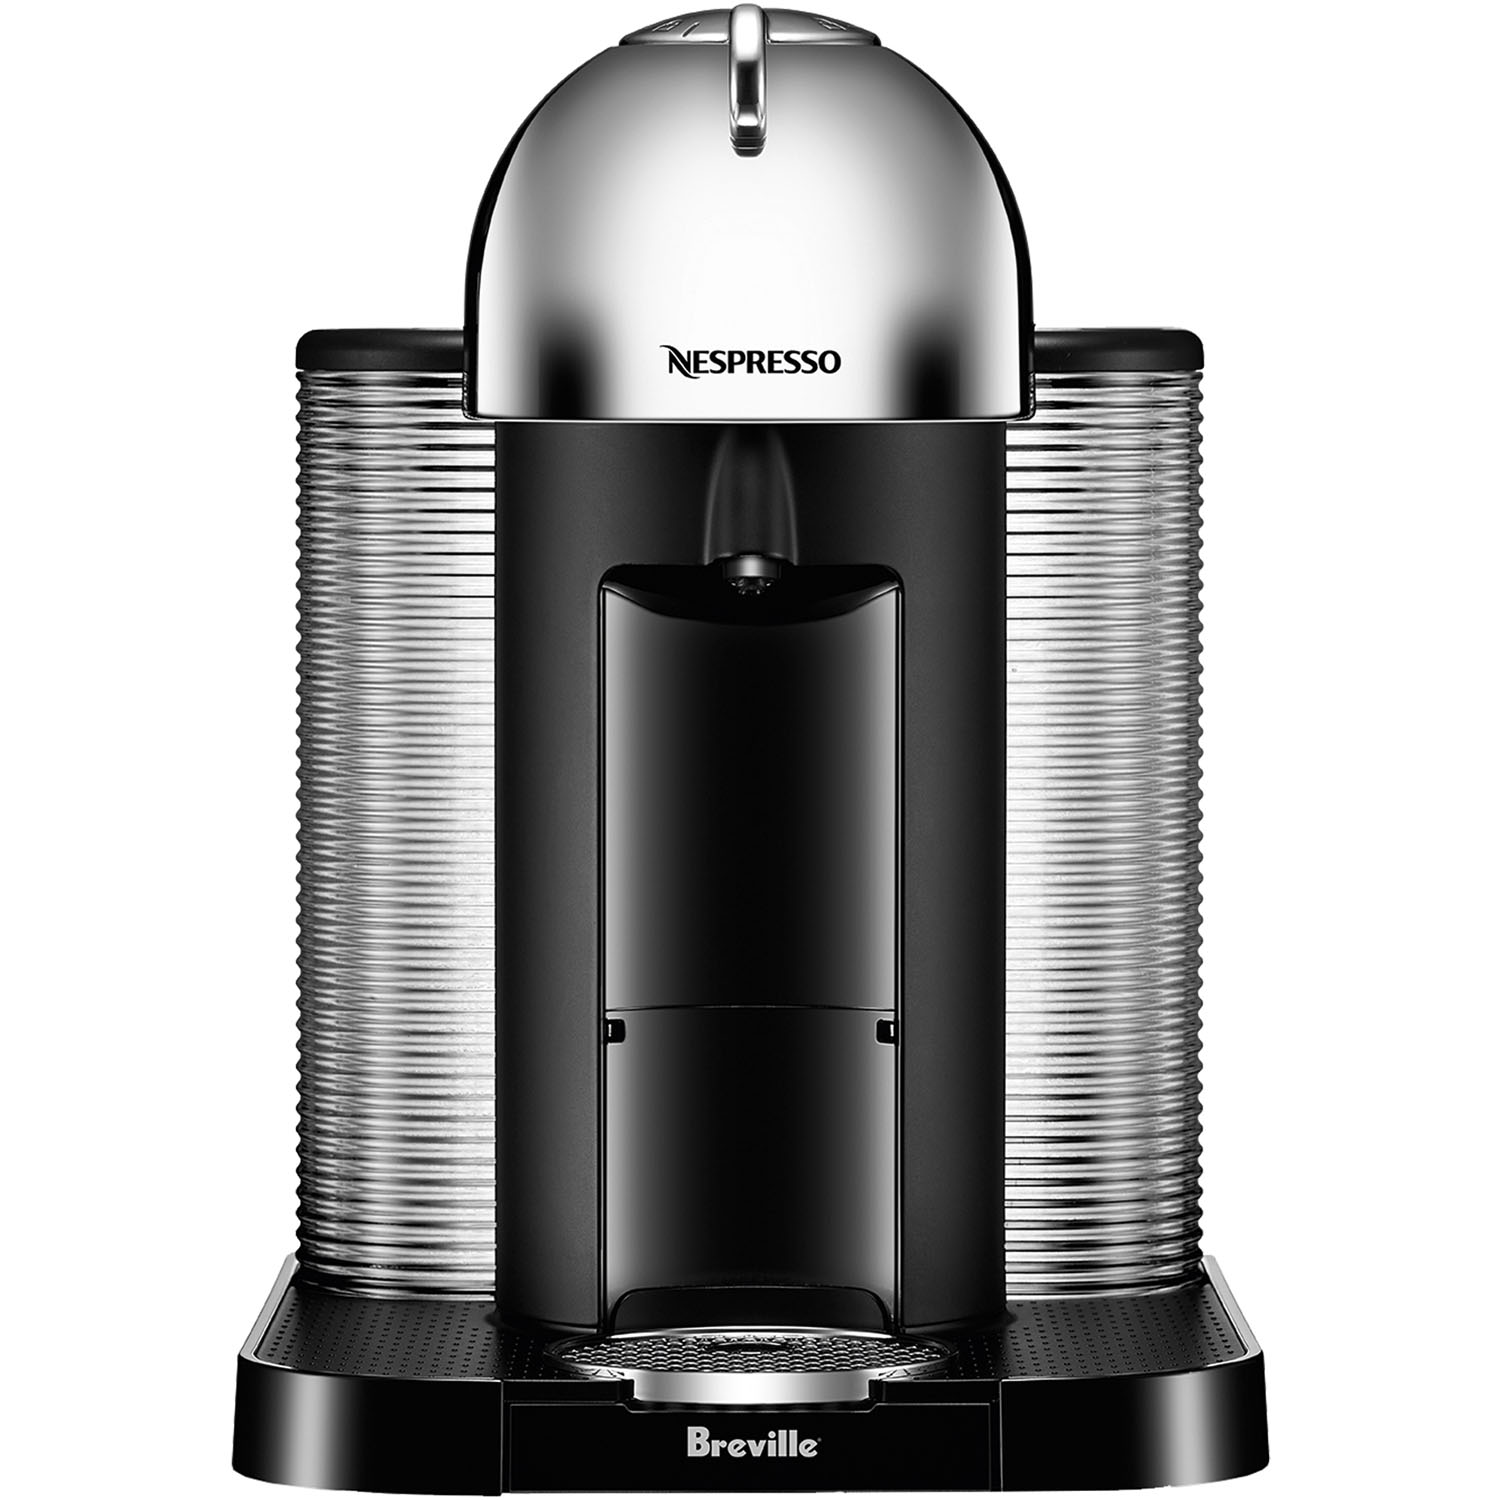 Breville Nespresso Vertuo Coffee & Espresso Single-Serve Machine in Chrome - image 1 of 9